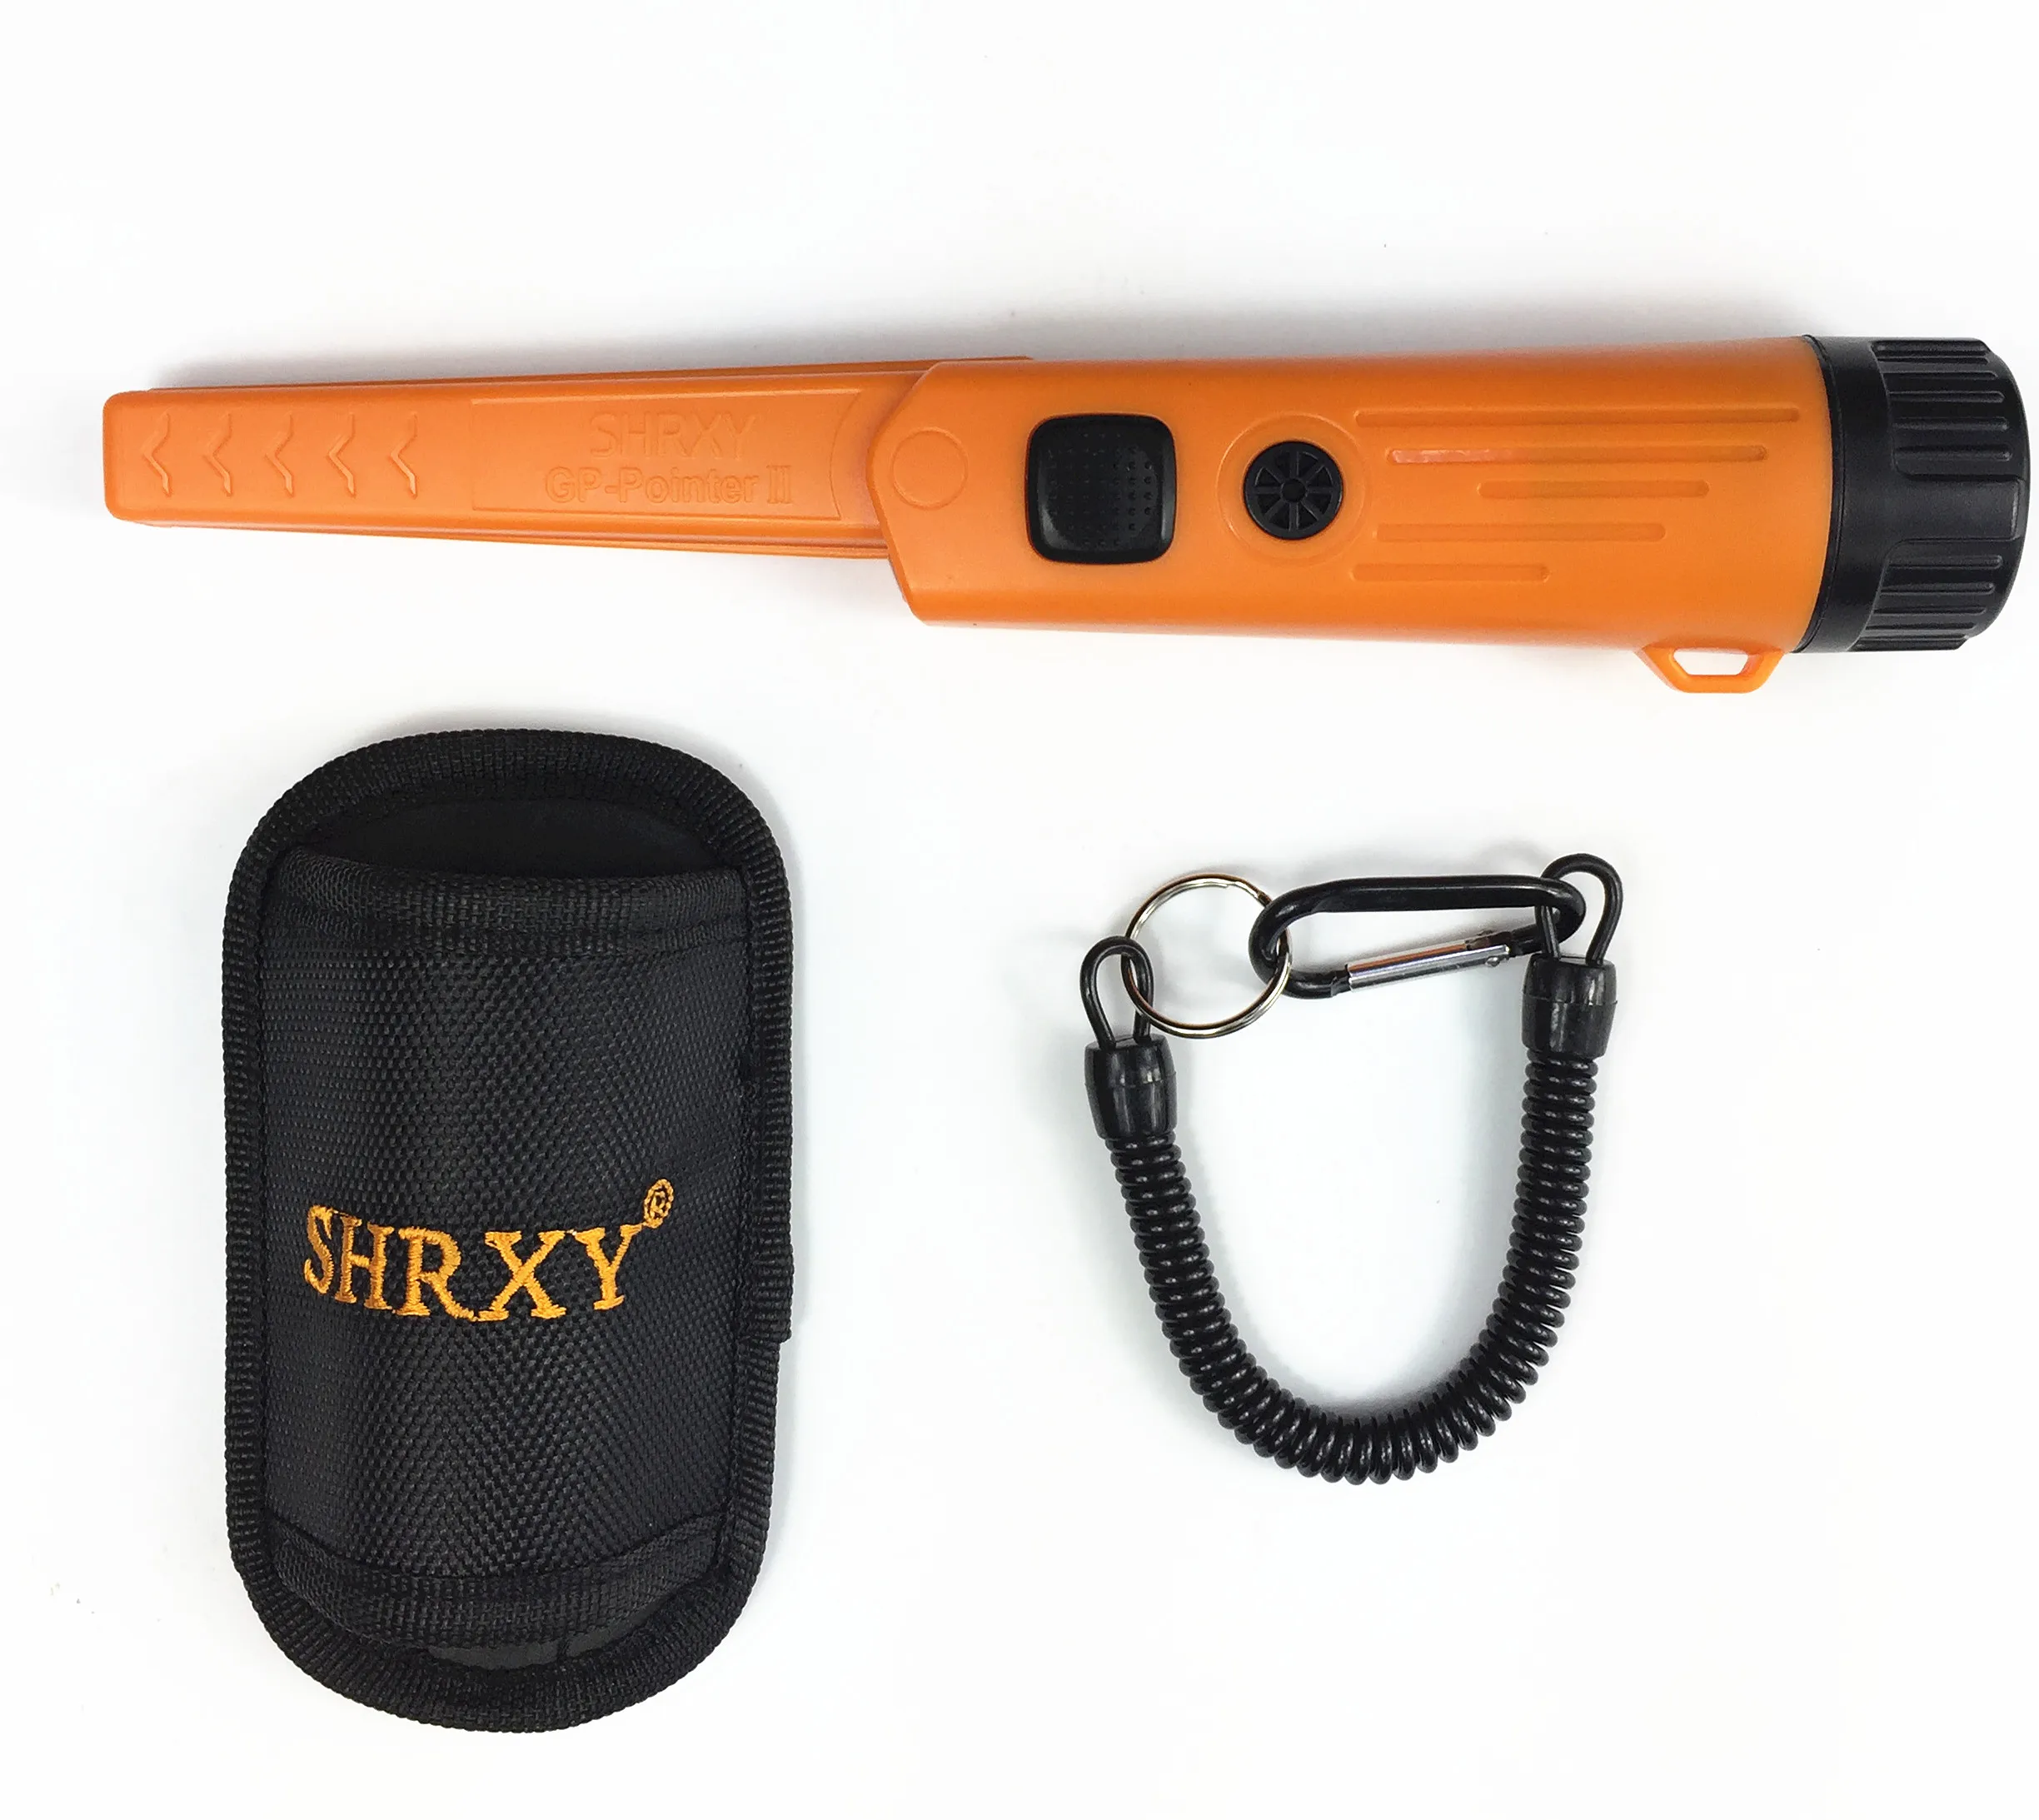 SHRXY Модернизированный Профессиональный точечный ручной металлоискатель TRX GP-pointer2 водонепроницаемый указатель металлоискатель оранжевый/черный цвет